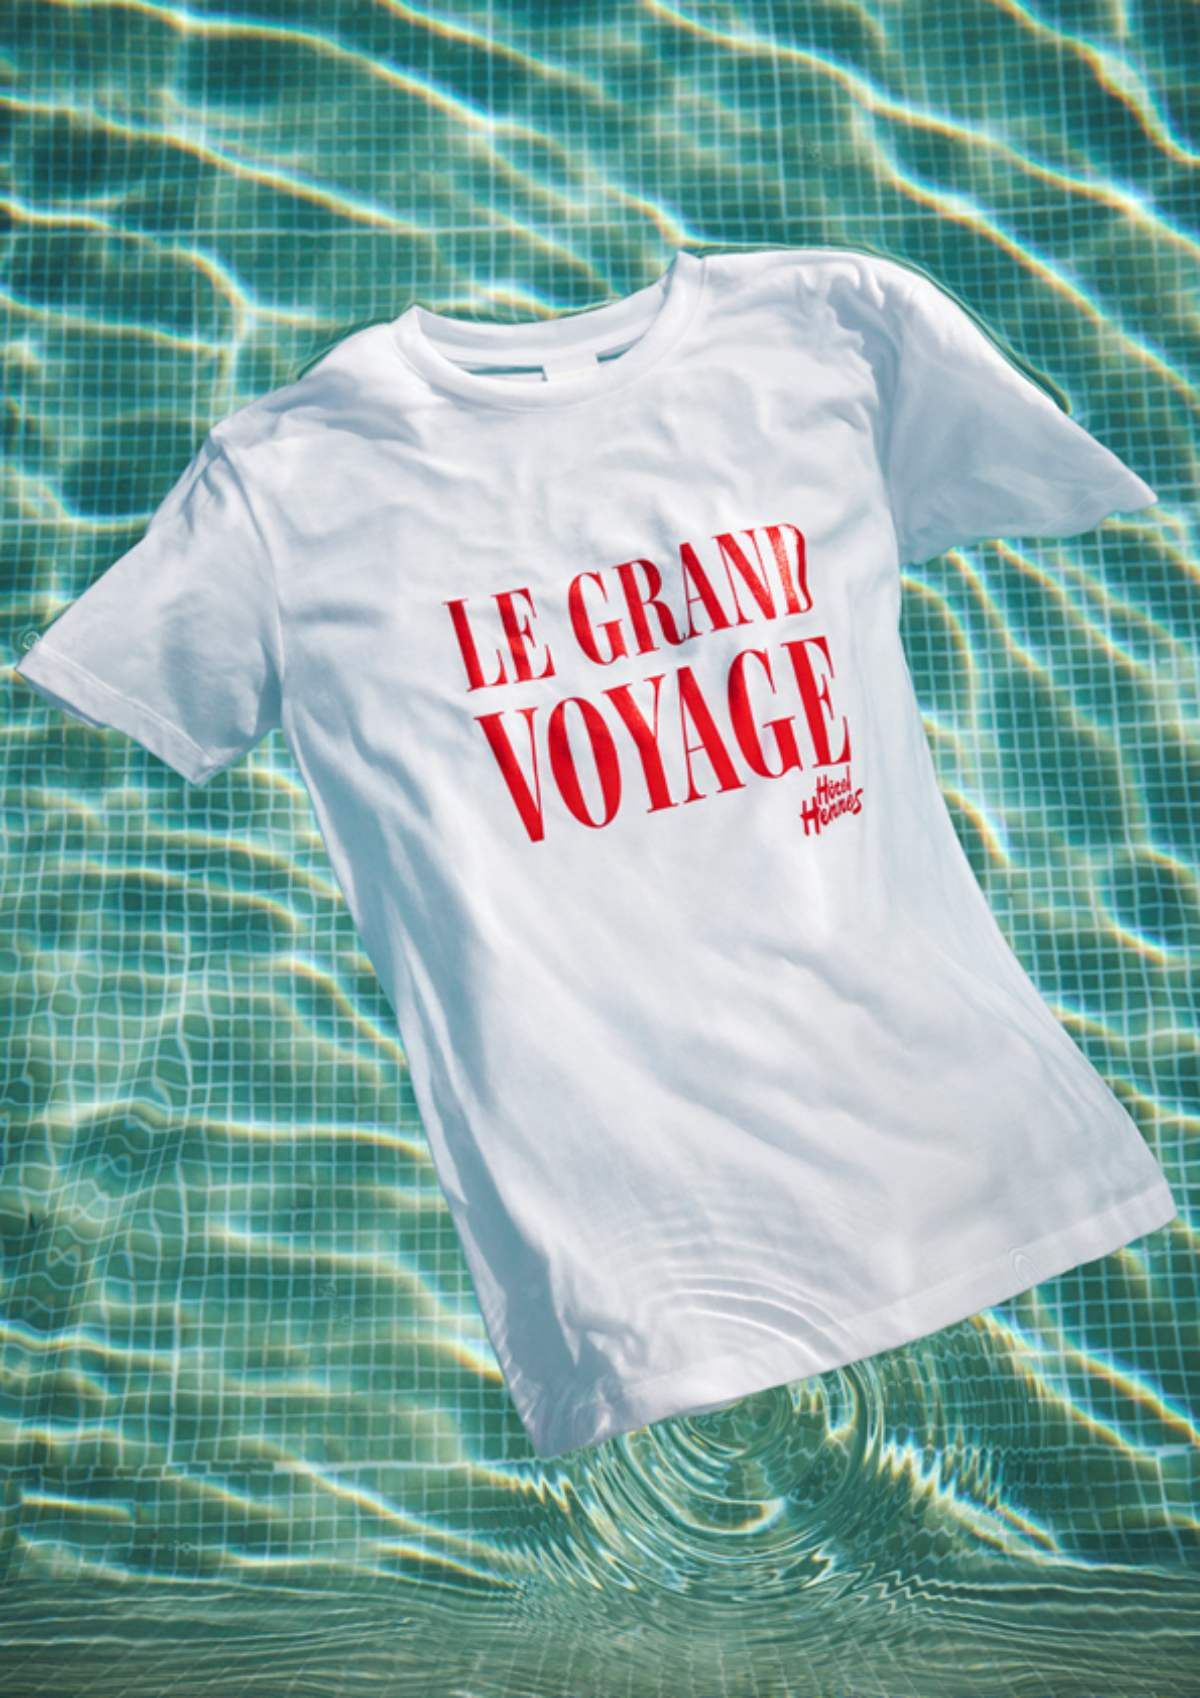 Camiseta 'Le Grand Voyage' de la nueva colección inspirada en el 'Hôtel Hennes'